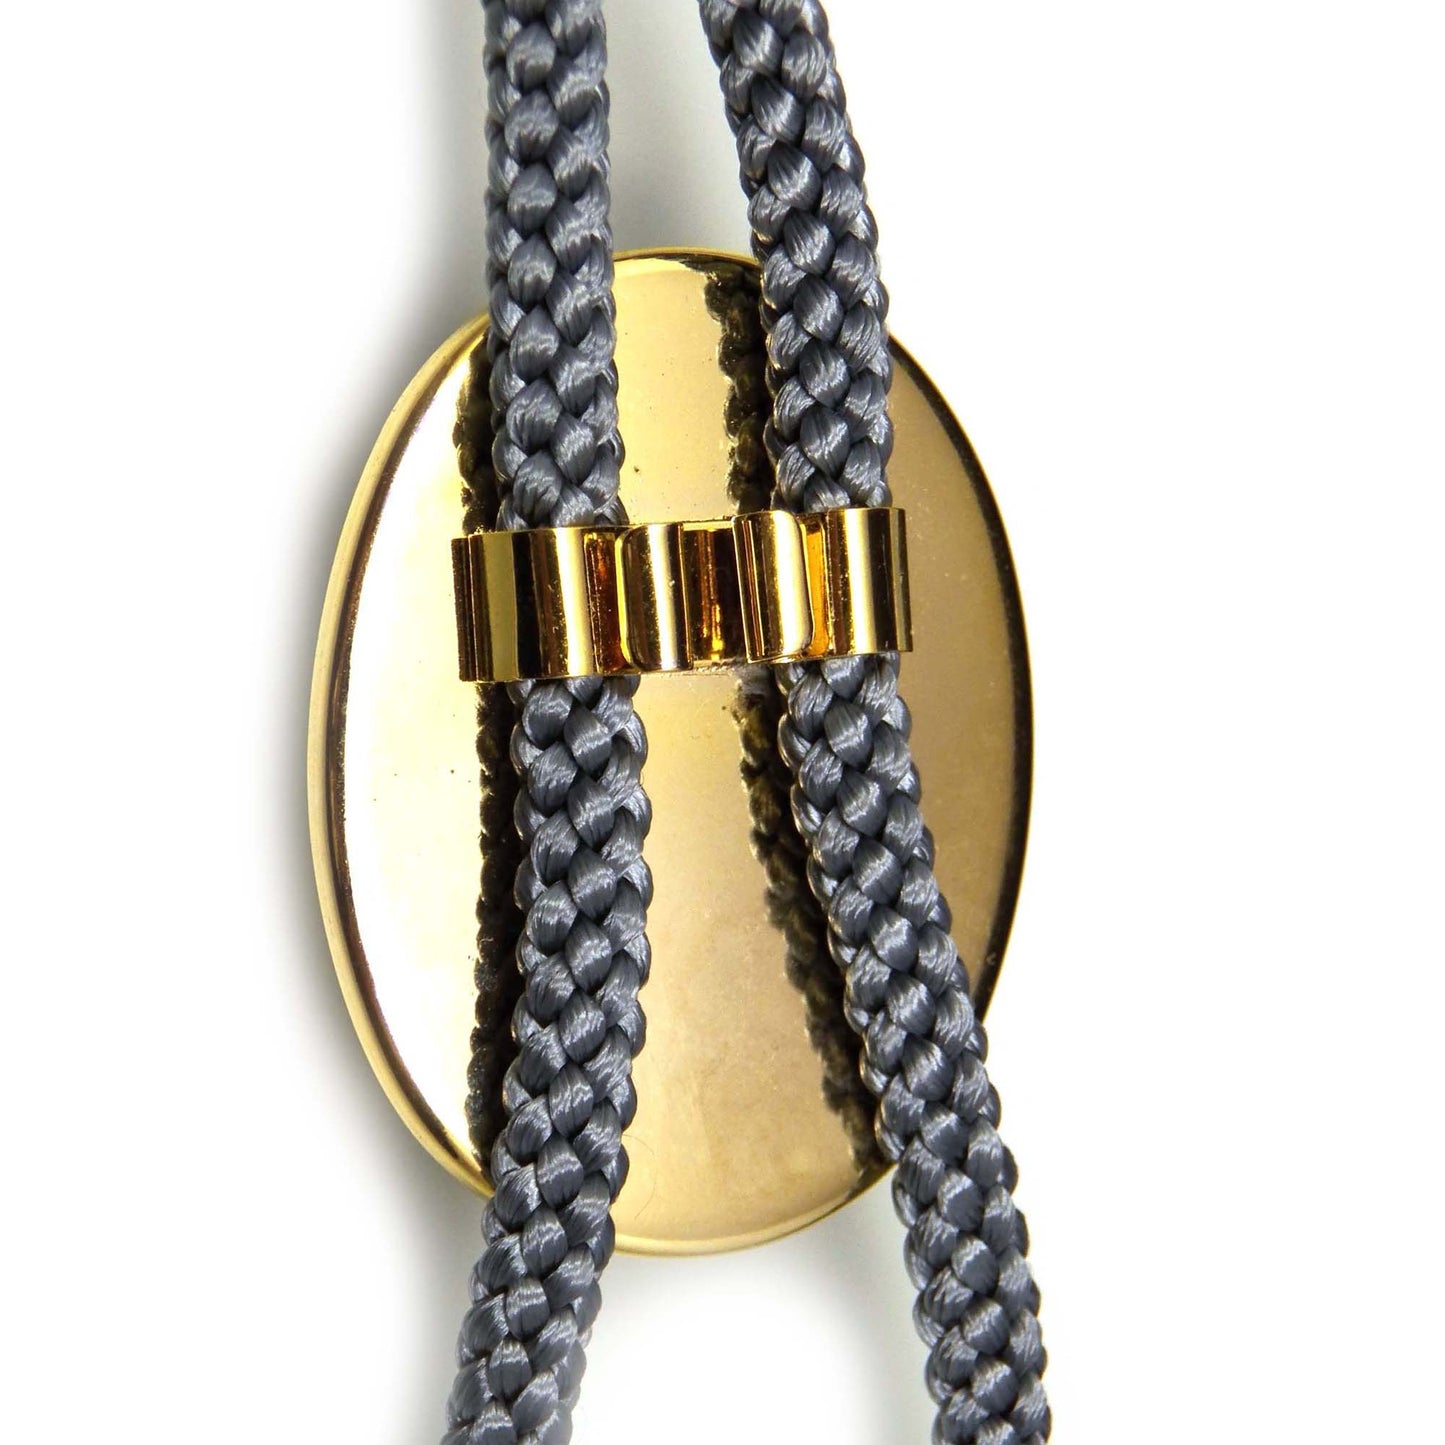 Sailing Ship Intaglio Pendant Necklace, Bolo Tie for Men, Turtle Shell Jewelry